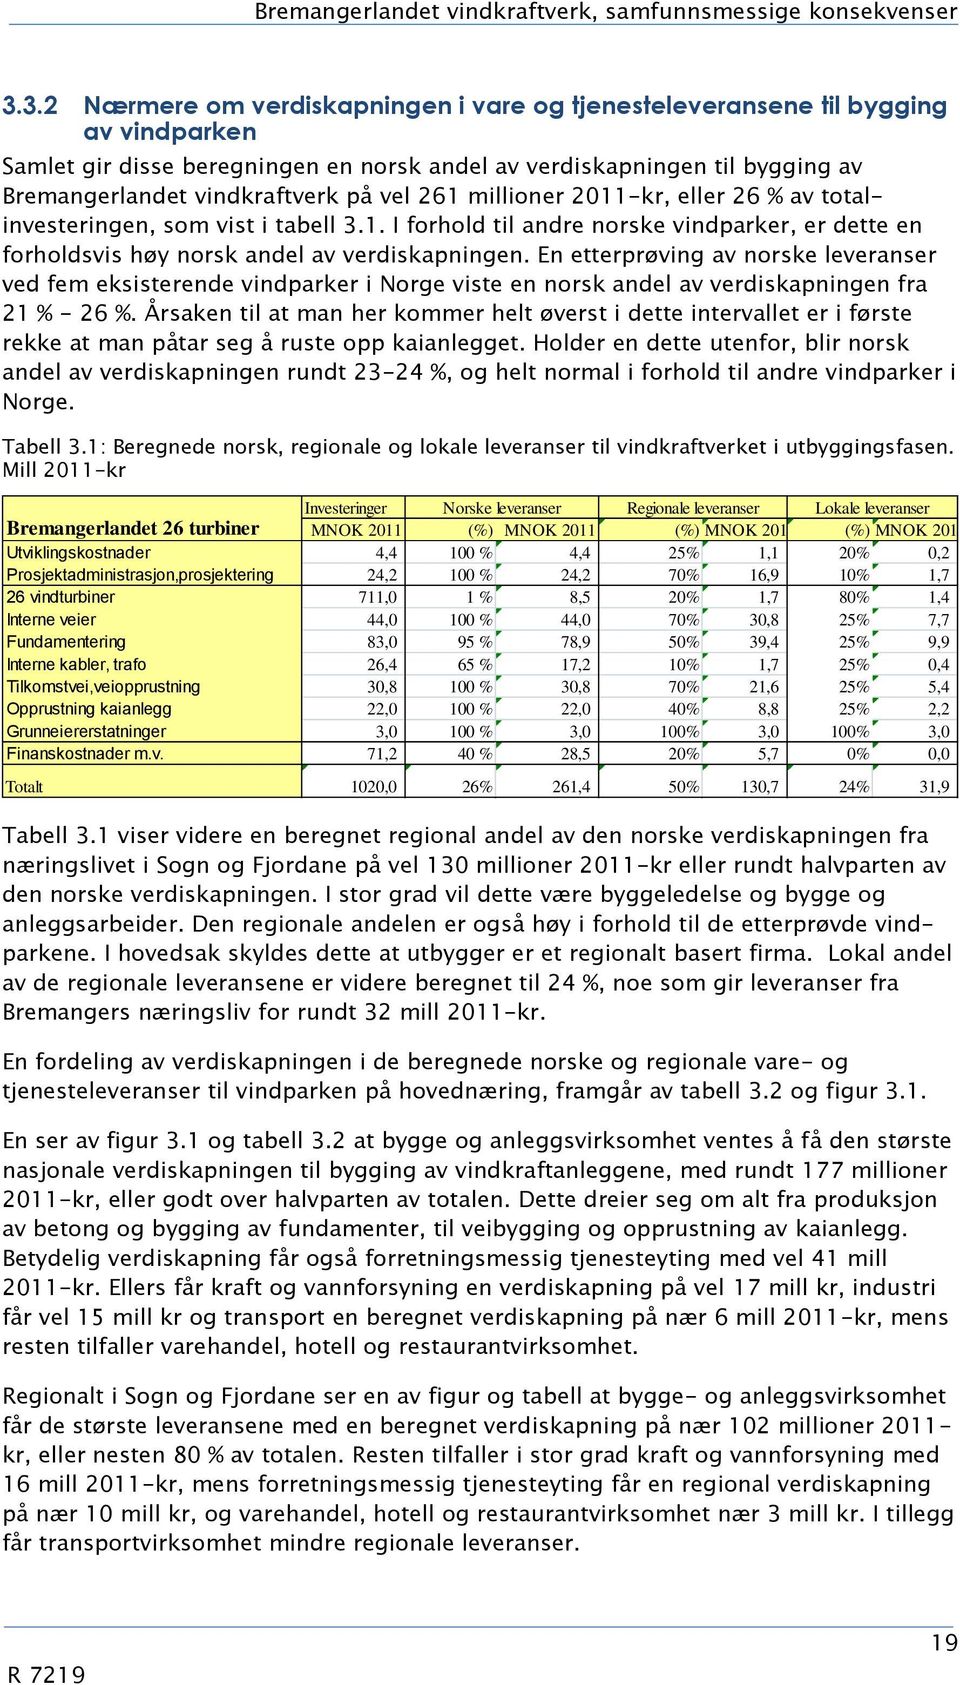 vel 261 millioner 2011-kr, eller 26 % av totalinvesteringen, som vist i tabell 3.1. I forhold til andre norske vindparker, er dette en forholdsvis høy norsk andel av verdiskapningen.